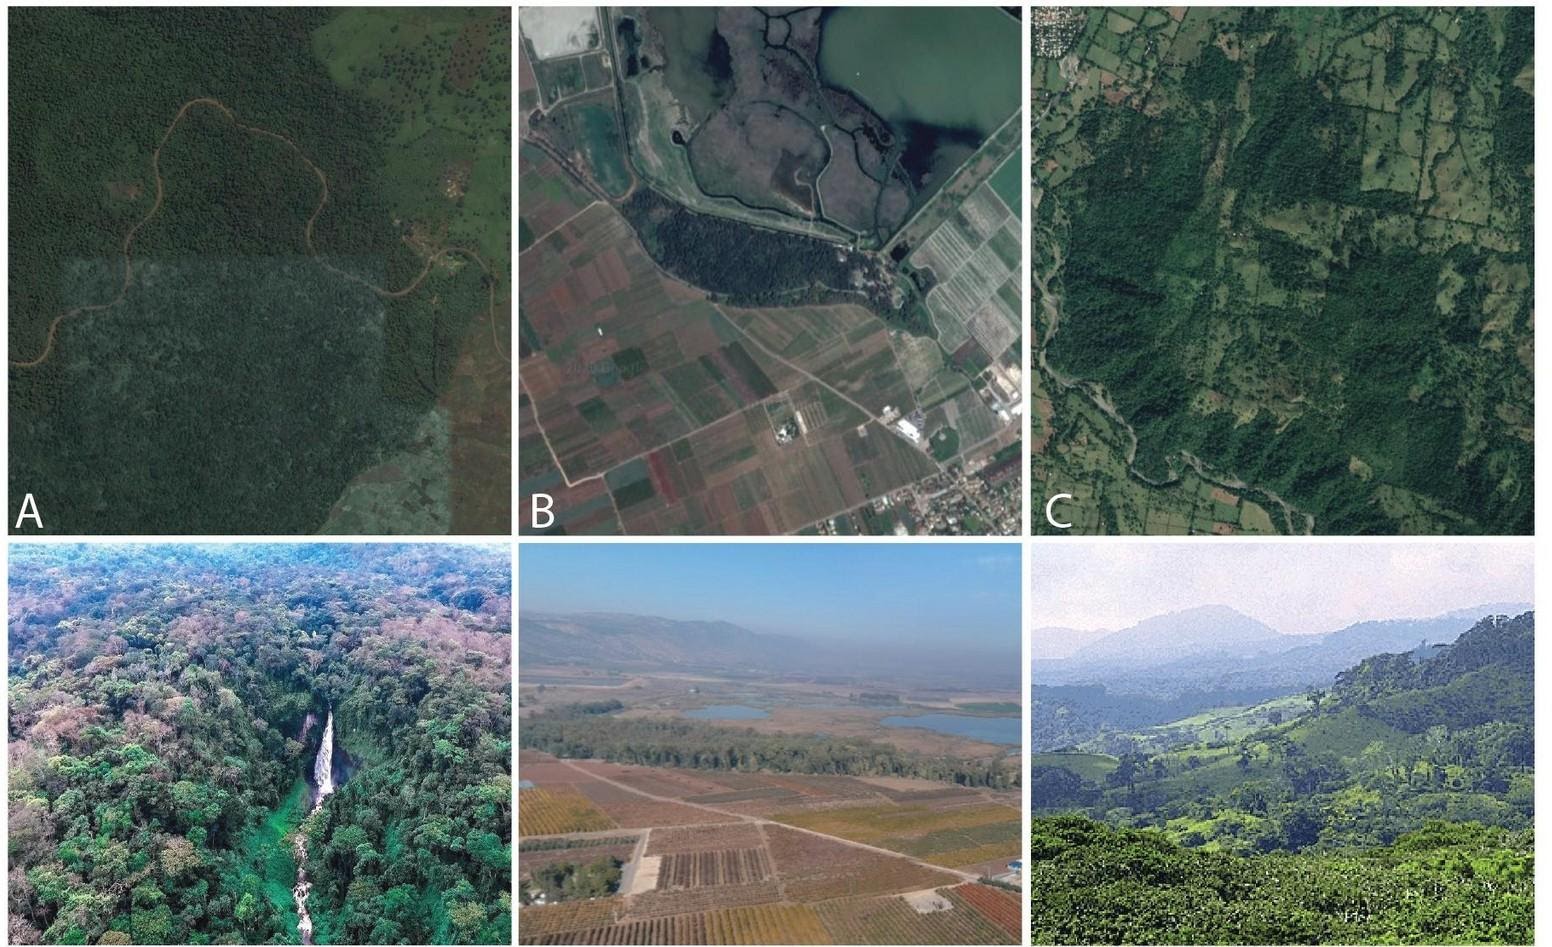 Exemple d’aires protégées parmi les plus importantes du monde en termes de biodiversité selon cette étude : A- Parc national de Kahuzi-Biega en République Démocratique du Congo (Catégorie IUCN II) ; B- Réserve naturelle d’Hula en Israël (Catégorie IUCN IV) ; C- Los Tuxtlas (Zona de Amortiguamiento) au Mexique (Catégorie IUCN VI). Crédits : Forest Service/USDA (public domain), Google Earth, Semarnat 